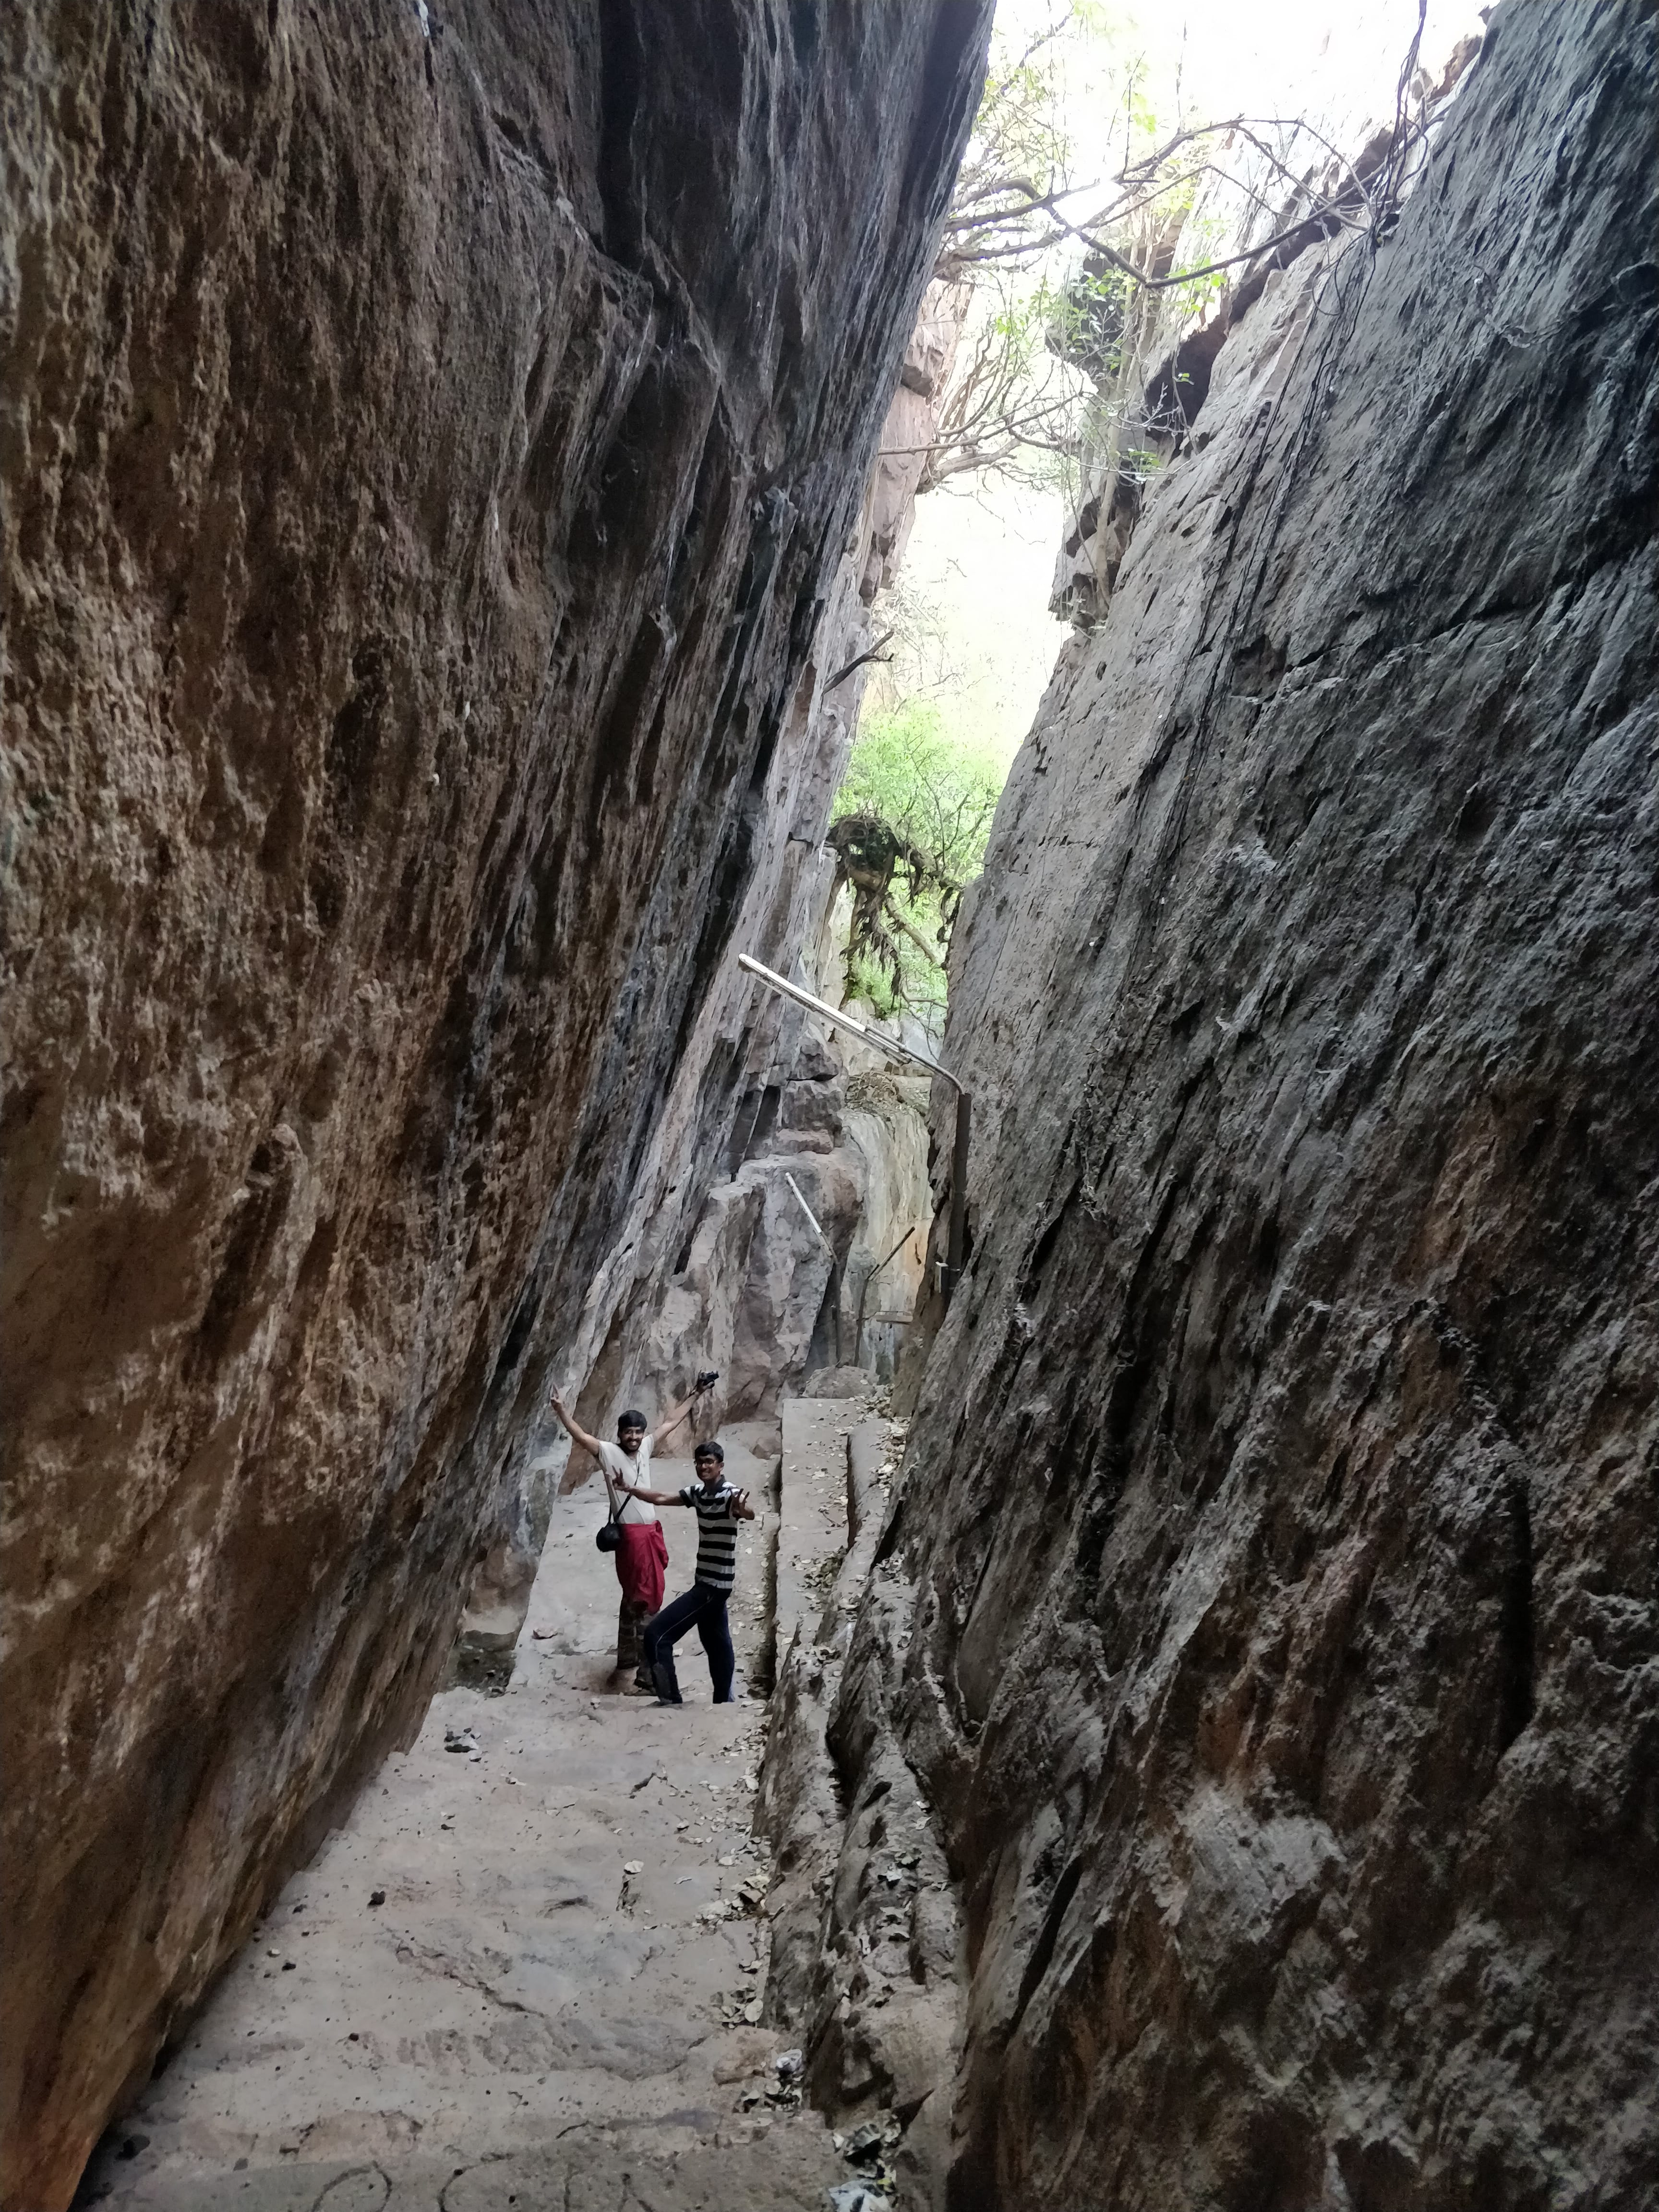 Gokak falls - path through huge rocks